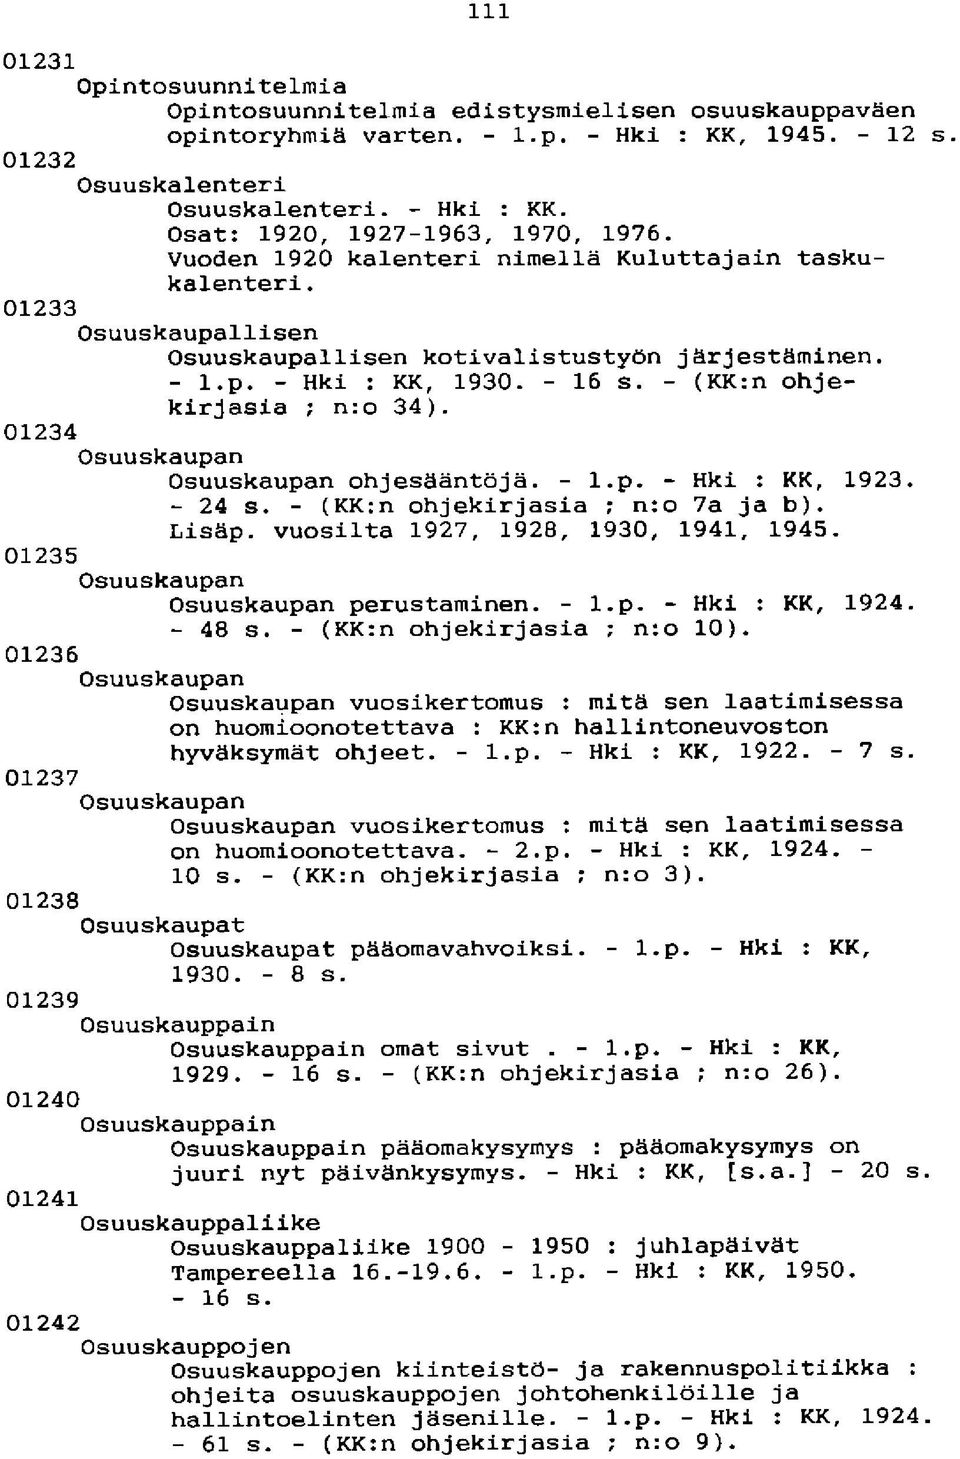 01234 Osuuskaupan Osuuskaupan ohjesääntöjä. - l.p. - Hki :KK, 1923. - 24 s. - (KK:n ohjekirjasia ; n:o 7a ja b). Lisäp. vuosilta 1927, 1928, 1930, 1941, 1945.